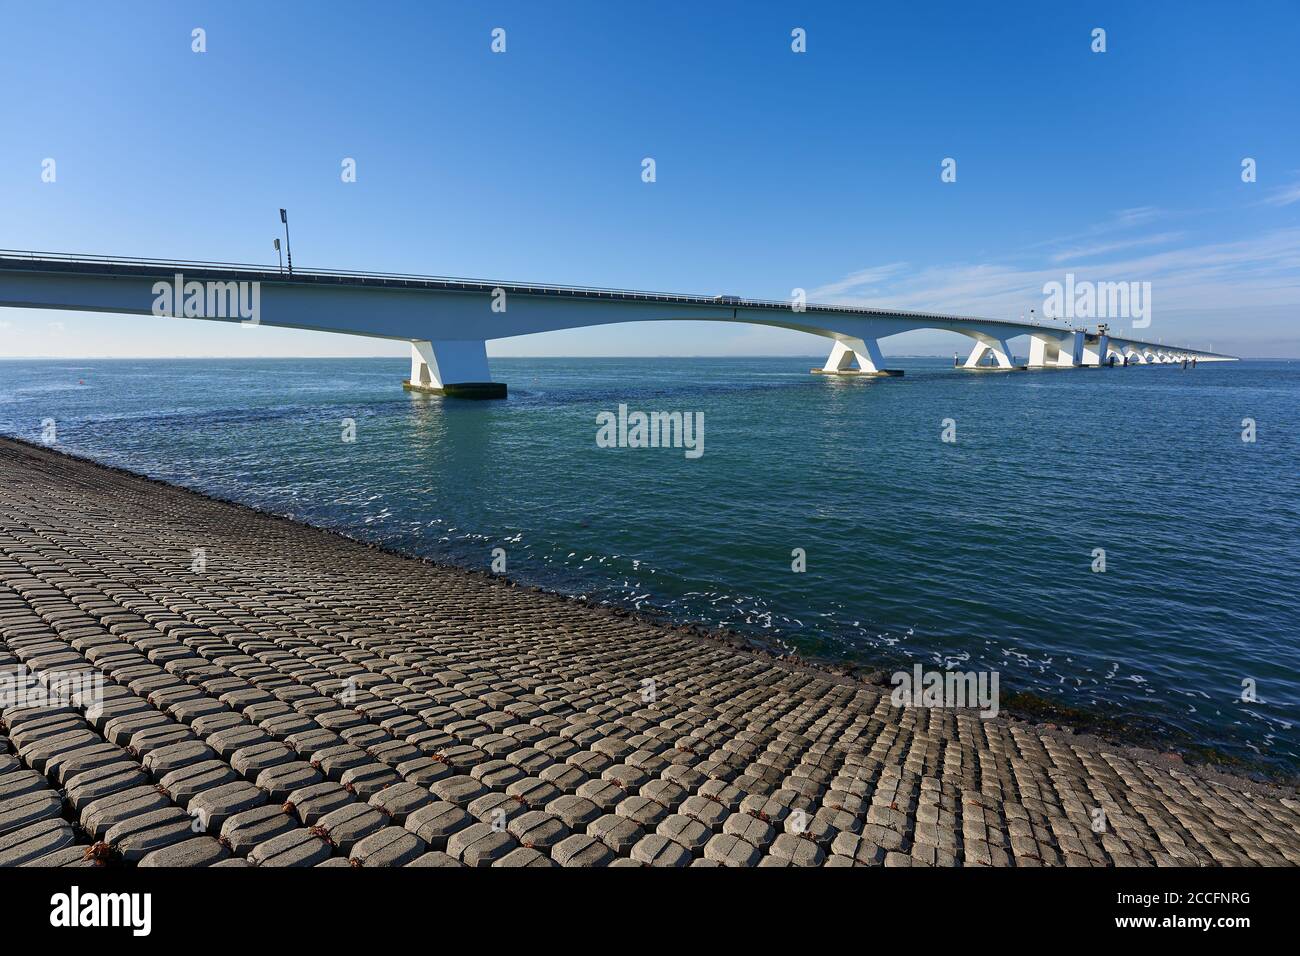 Große Zeeland-Brücke, Damm aus Steinblöcken, tiefblaues Meerwasser und wolkenloser Himmel. Niederlande, Zeeland. Stockfoto